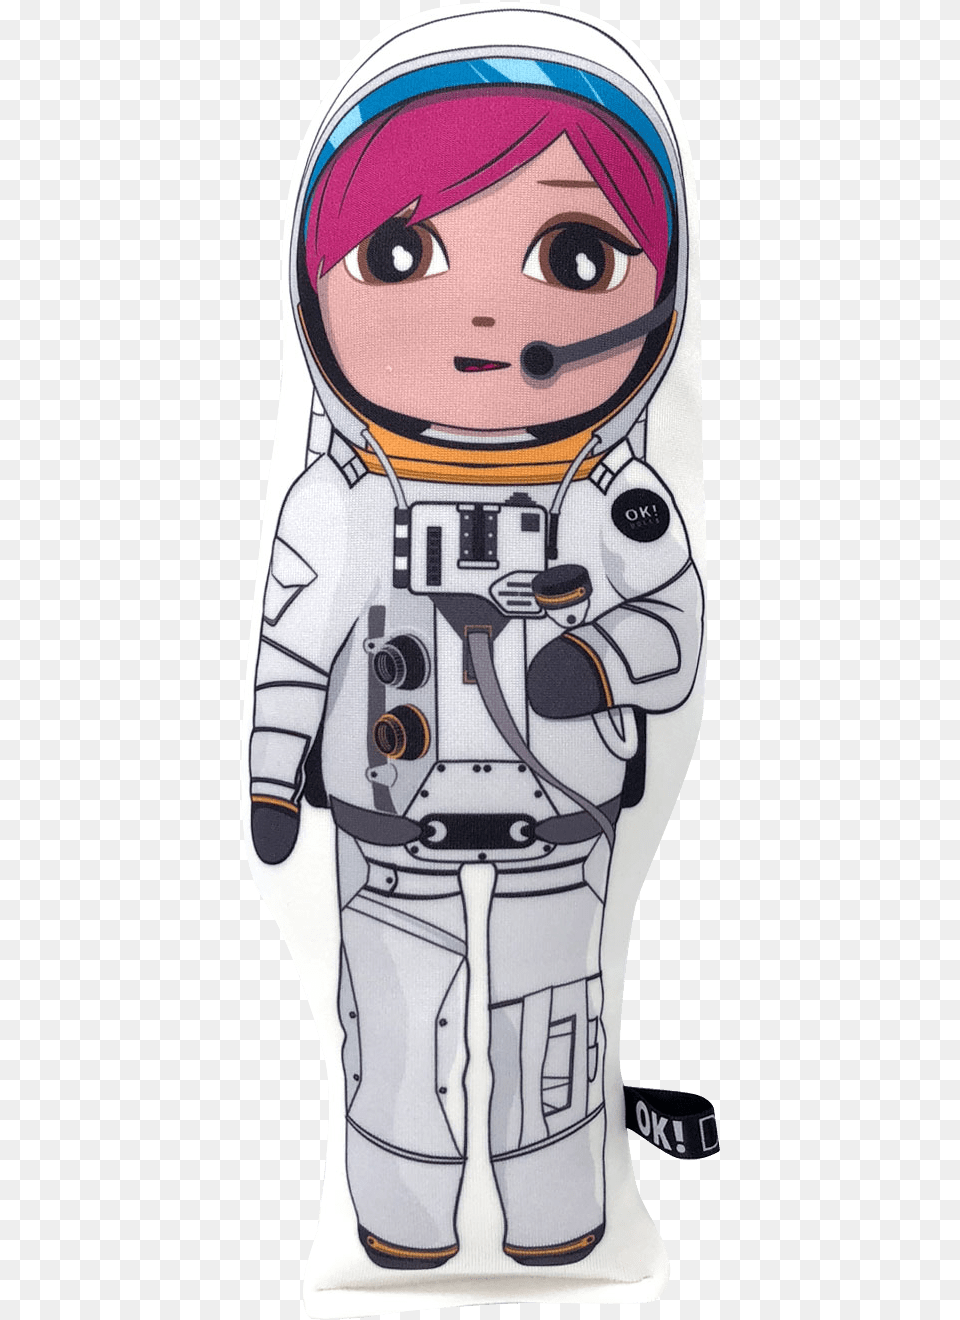 Transparent Astronaut Helmet Clipart Cartoon, Book, Comics, Publication, Adult Png Image